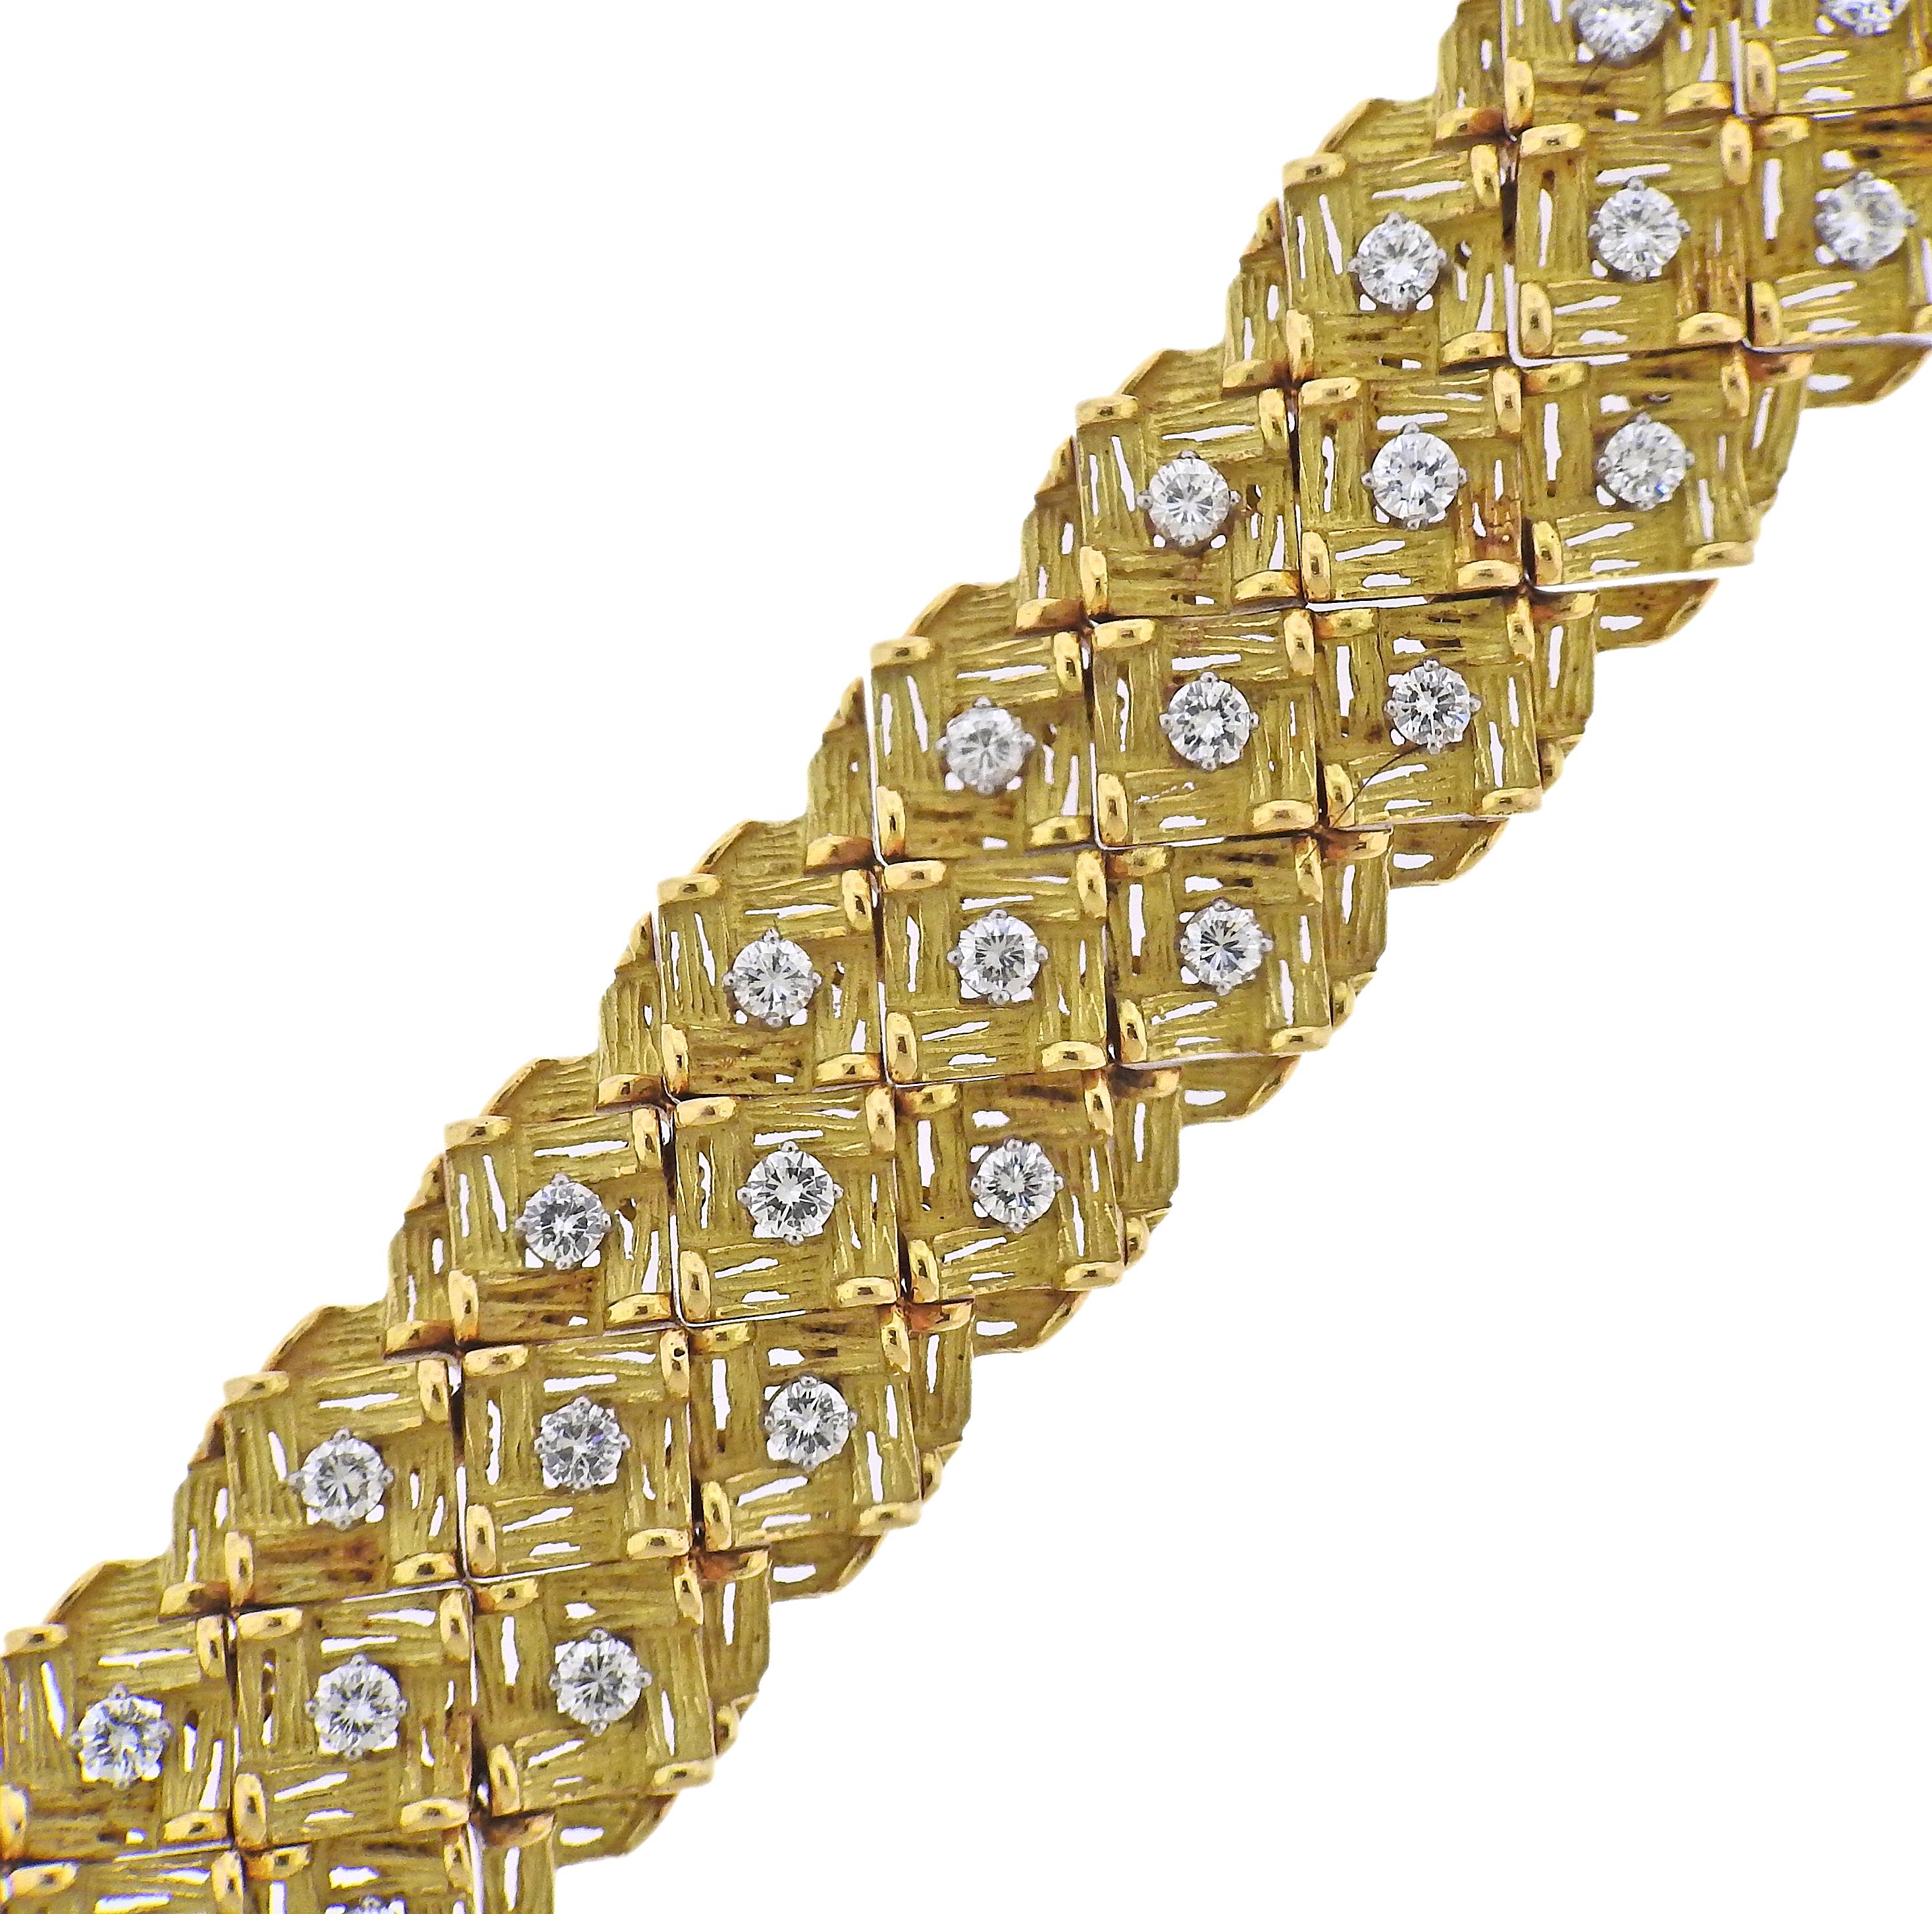 1960er-Jahre Vintage-Armband aus französischem 18-karätigem Gold, besetzt mit ca. 6-6,50ctw H/Si1-Diamanten. Das Armband ist 7,25